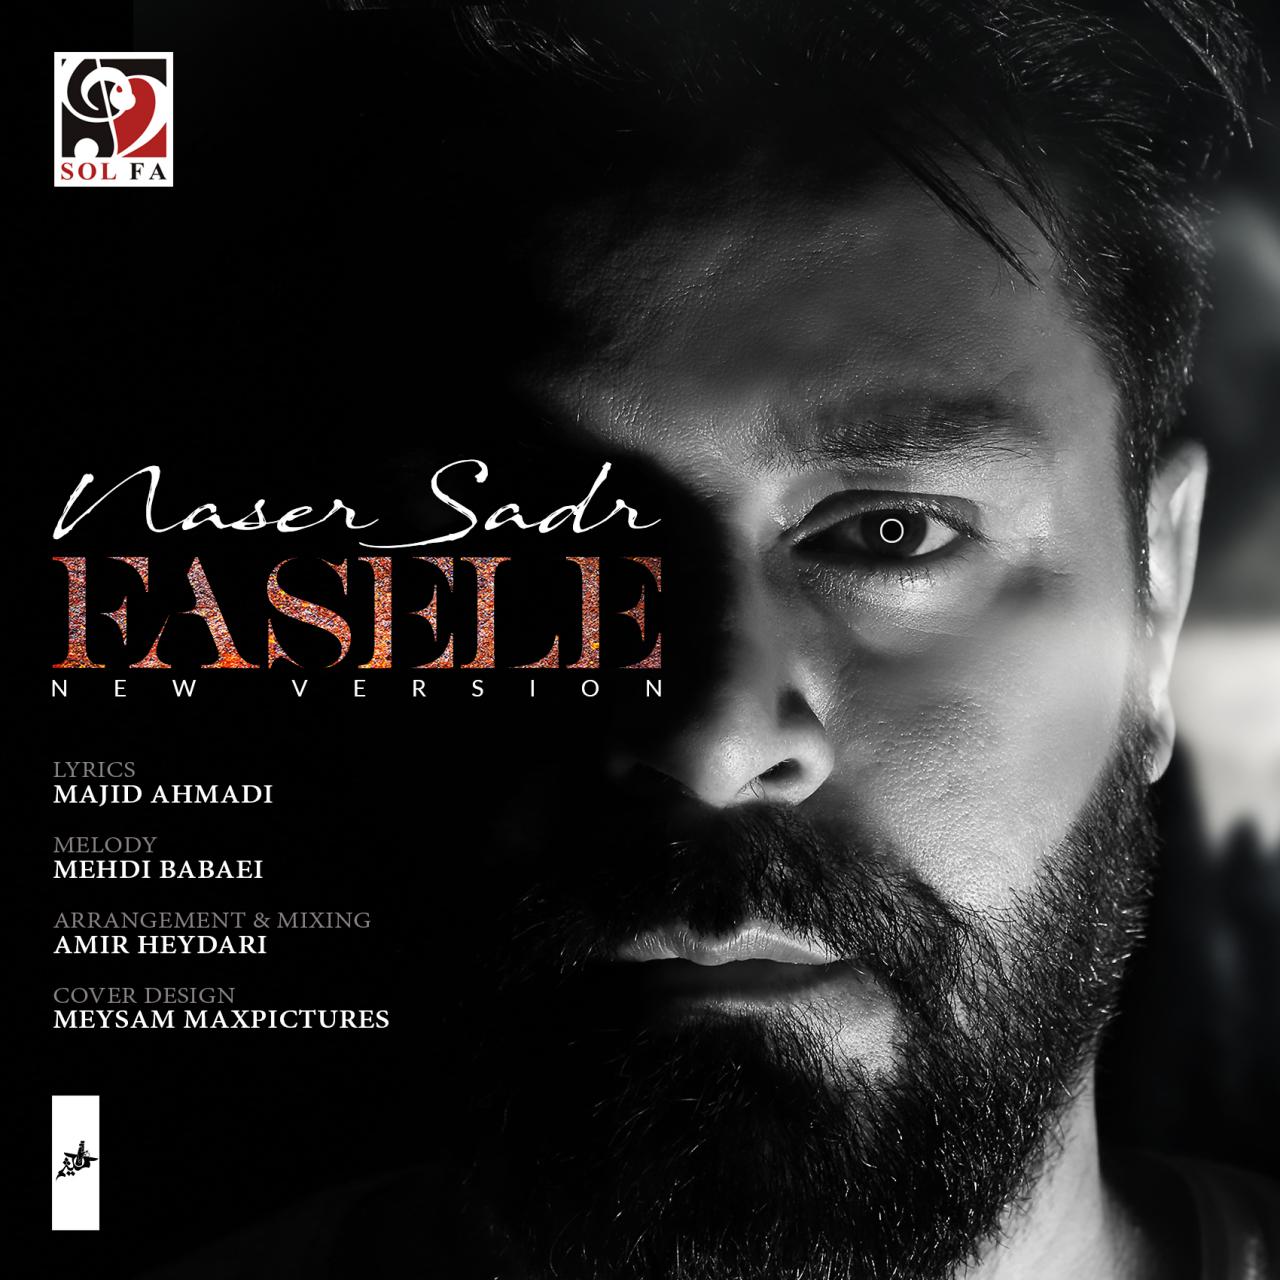  دانلود آهنگ جدید ناصر صدر - فاصله ( ورژن جدید ) | Download New Music By Naser Sadr - Faseleh (New Version)